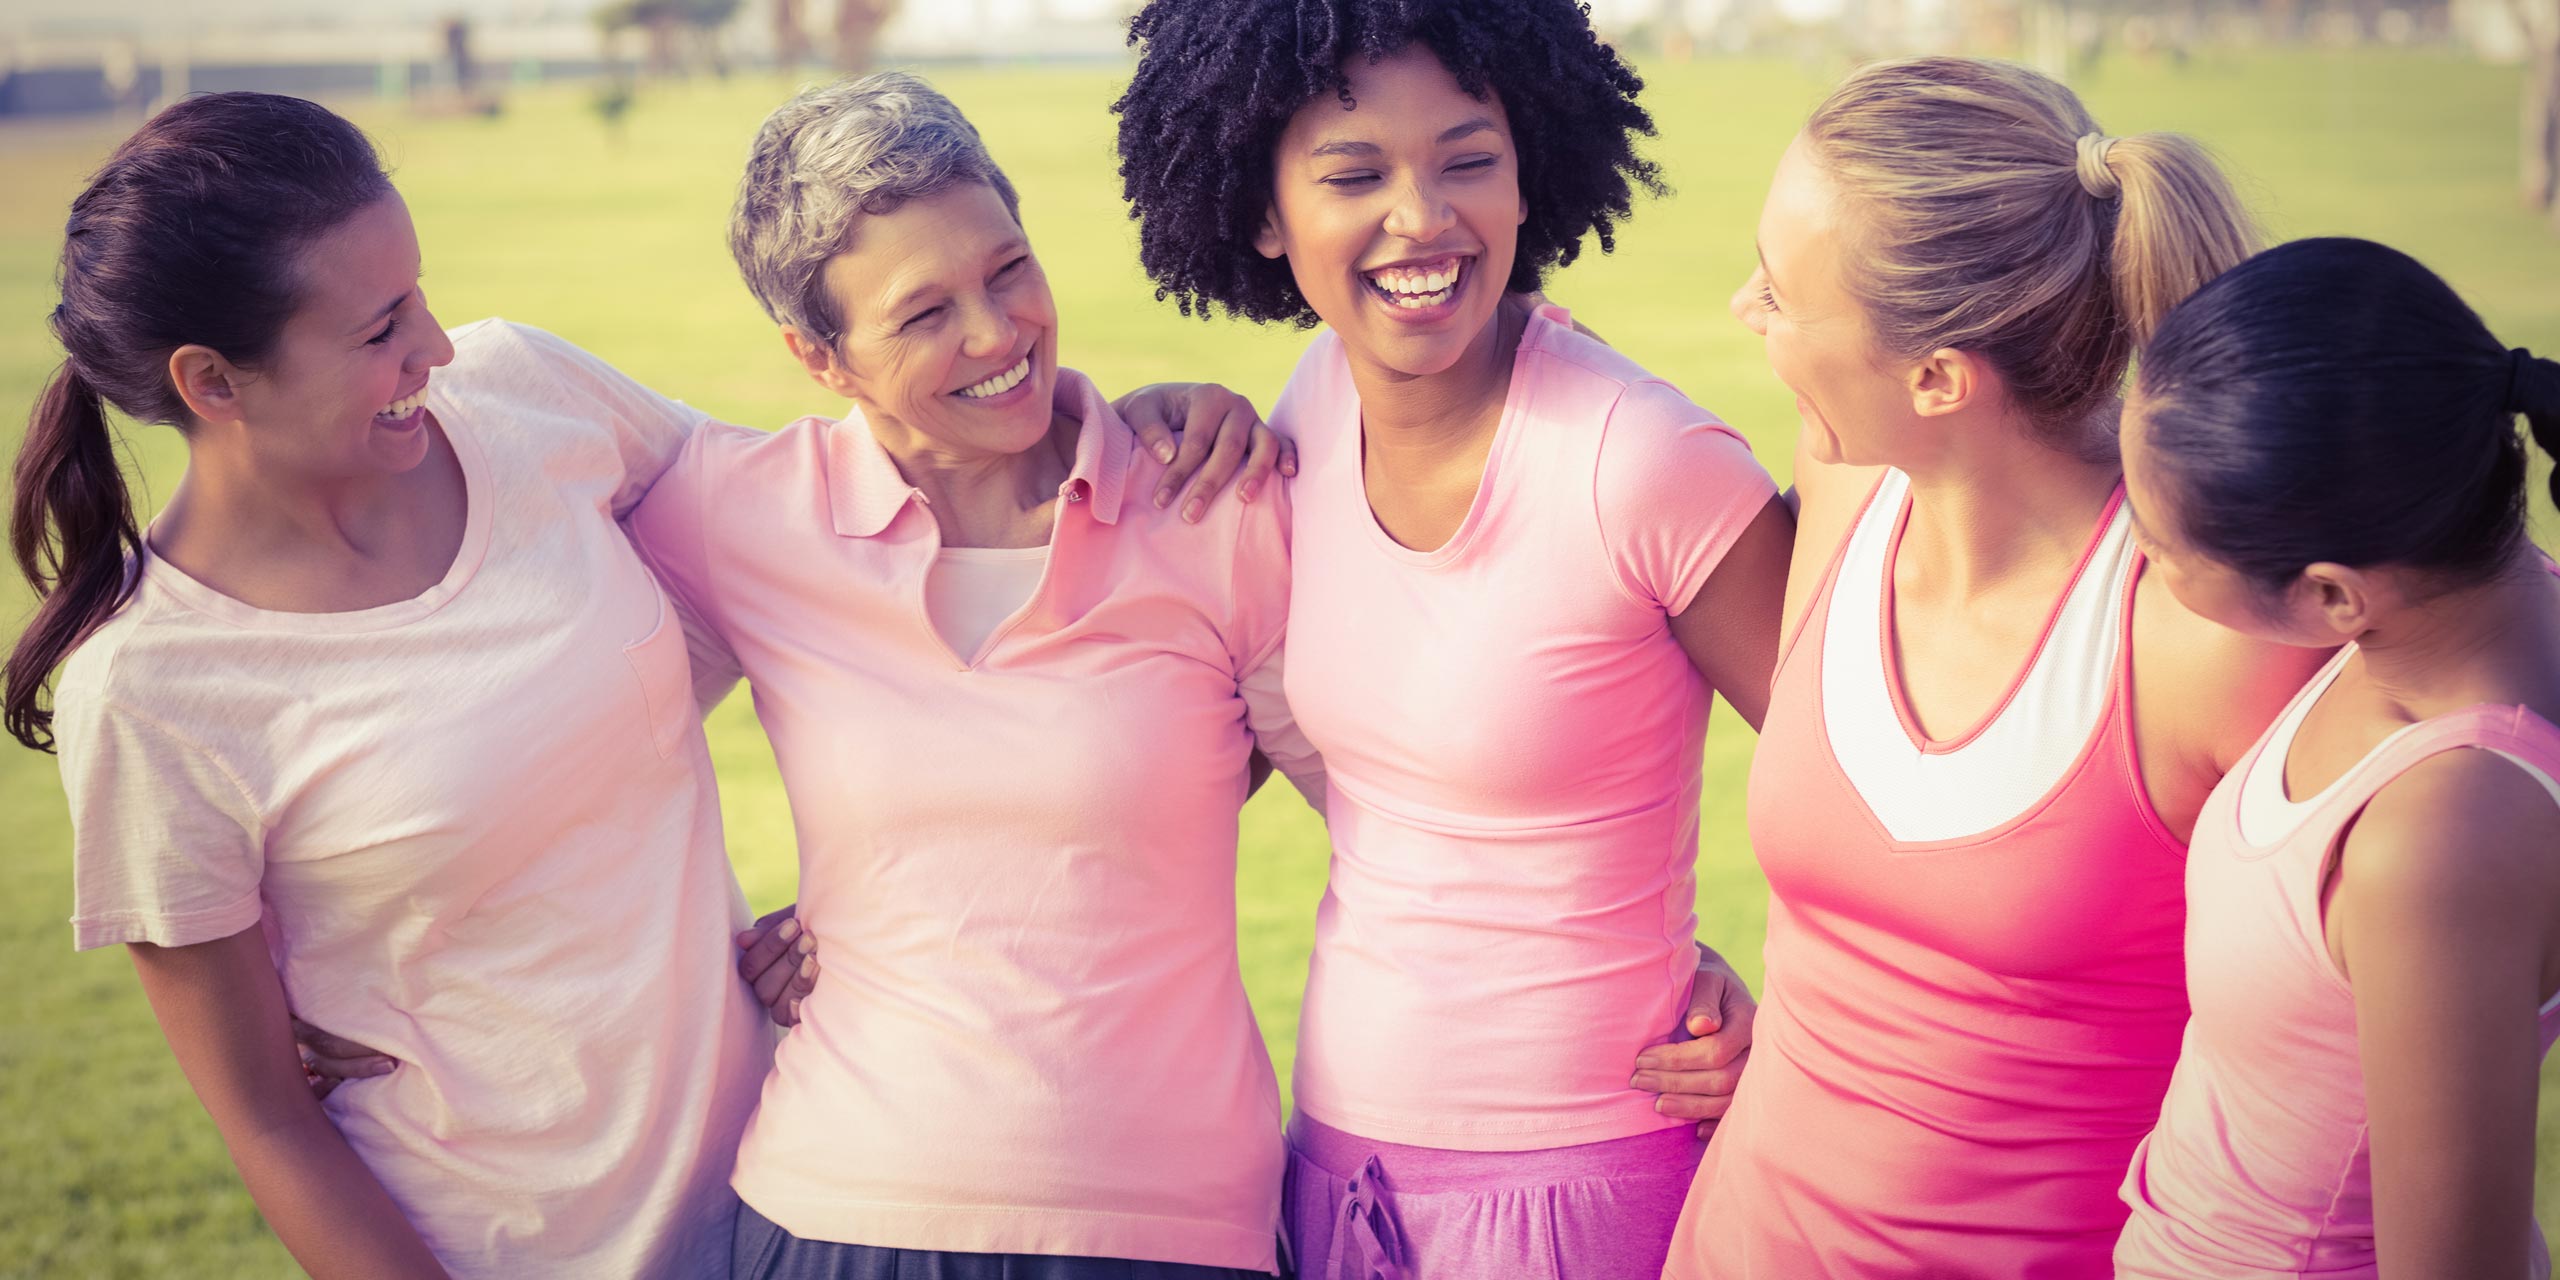 Gruppe lächelnder Frauen in rosa Trikots bzw. Shirts und violetten Sporthosen